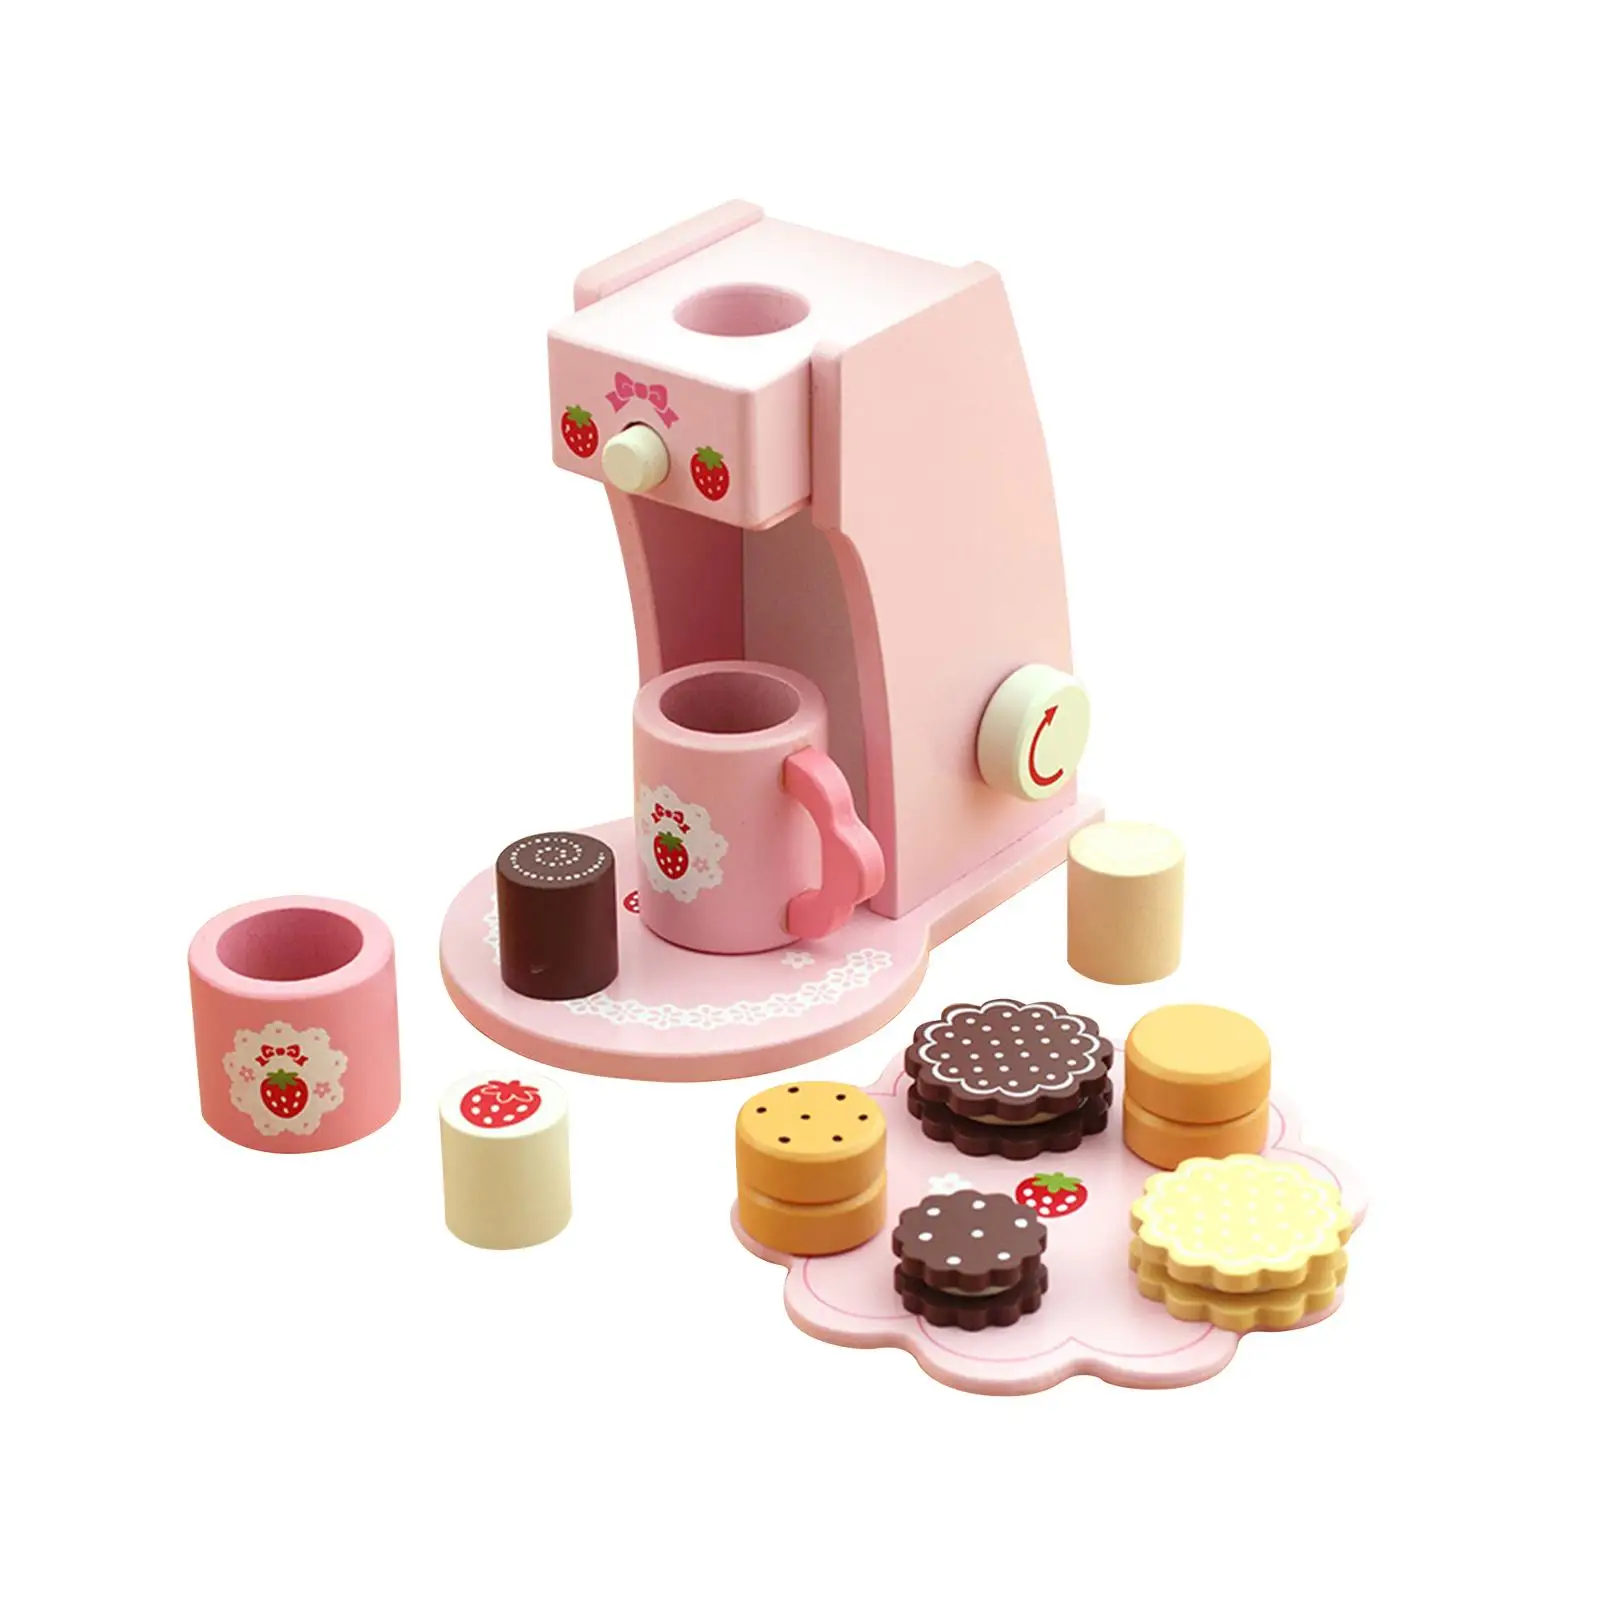 Wooden Kitchen Toys kitchen Playset for toddlers Children Birthday Gift